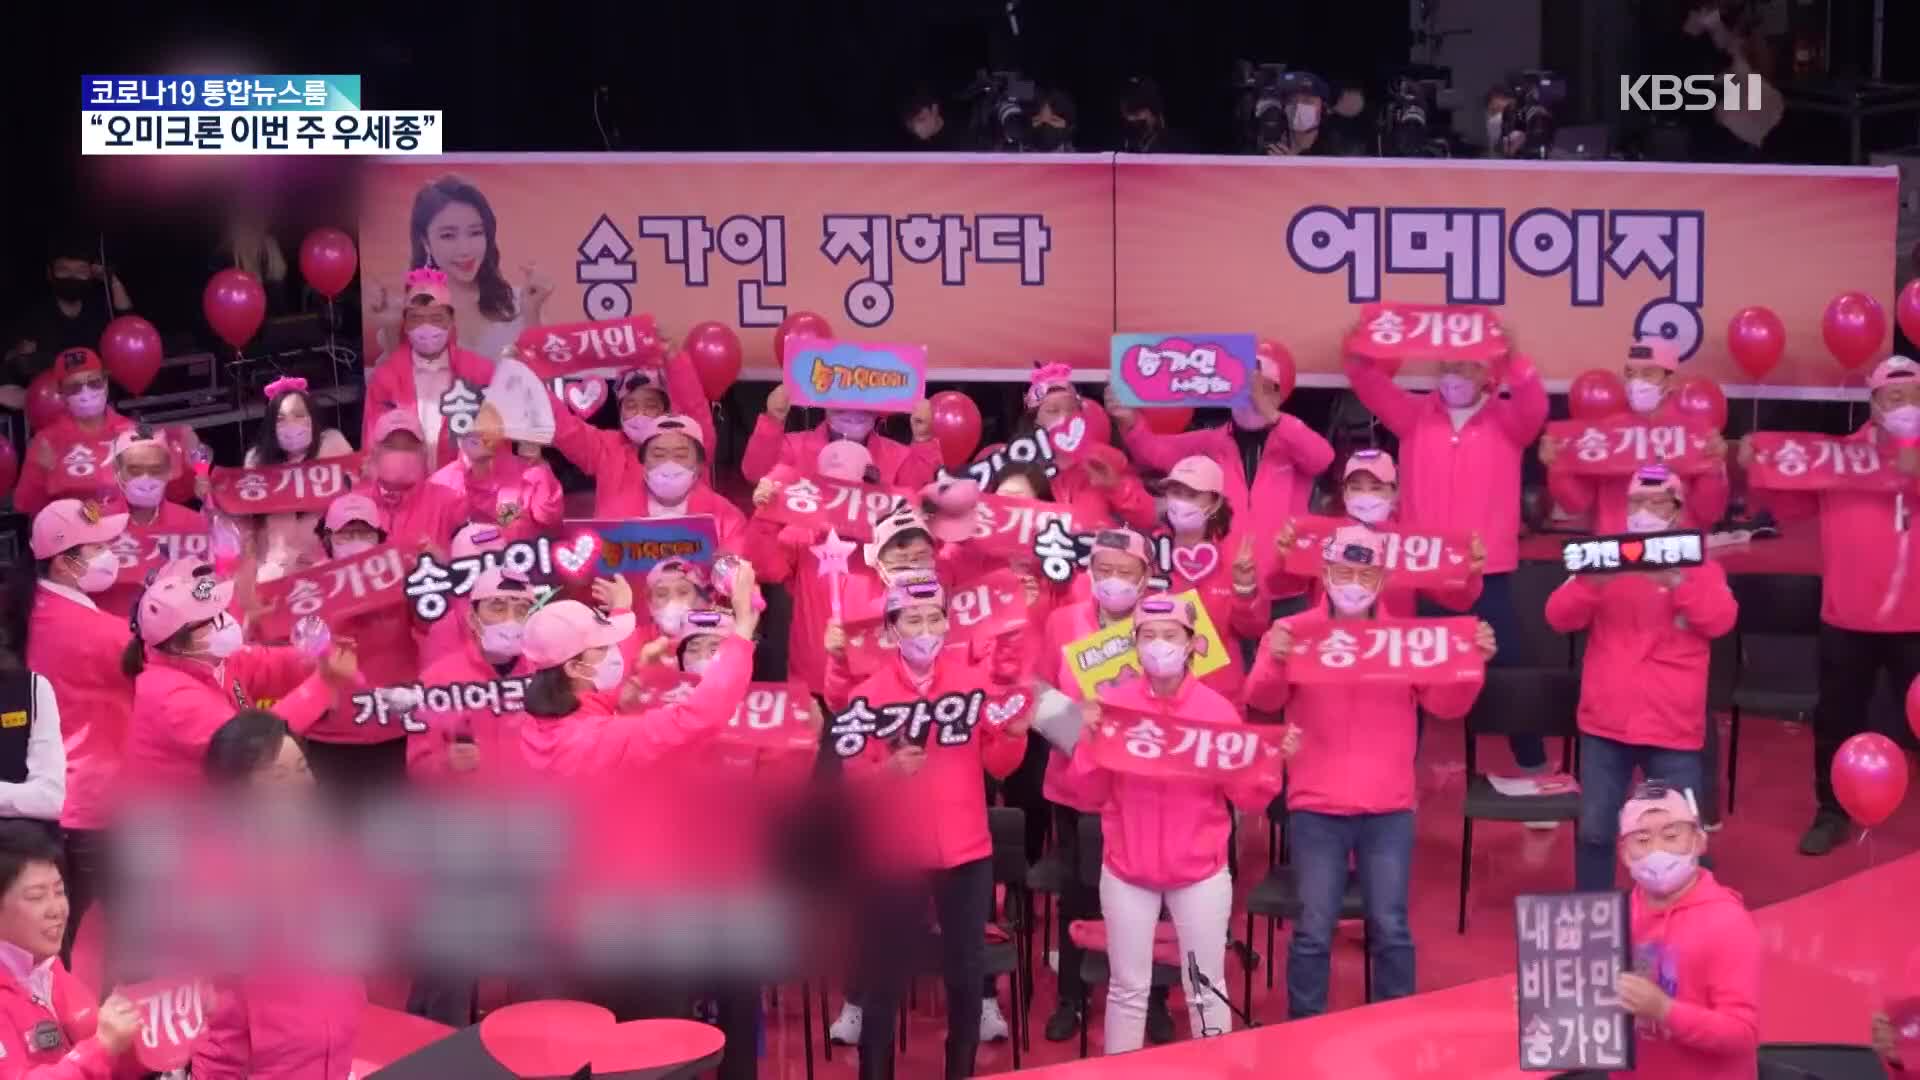 [문화광장] 스타와 팬의 만남, KBS 2TV ‘주접이 풍년’ 첫 선